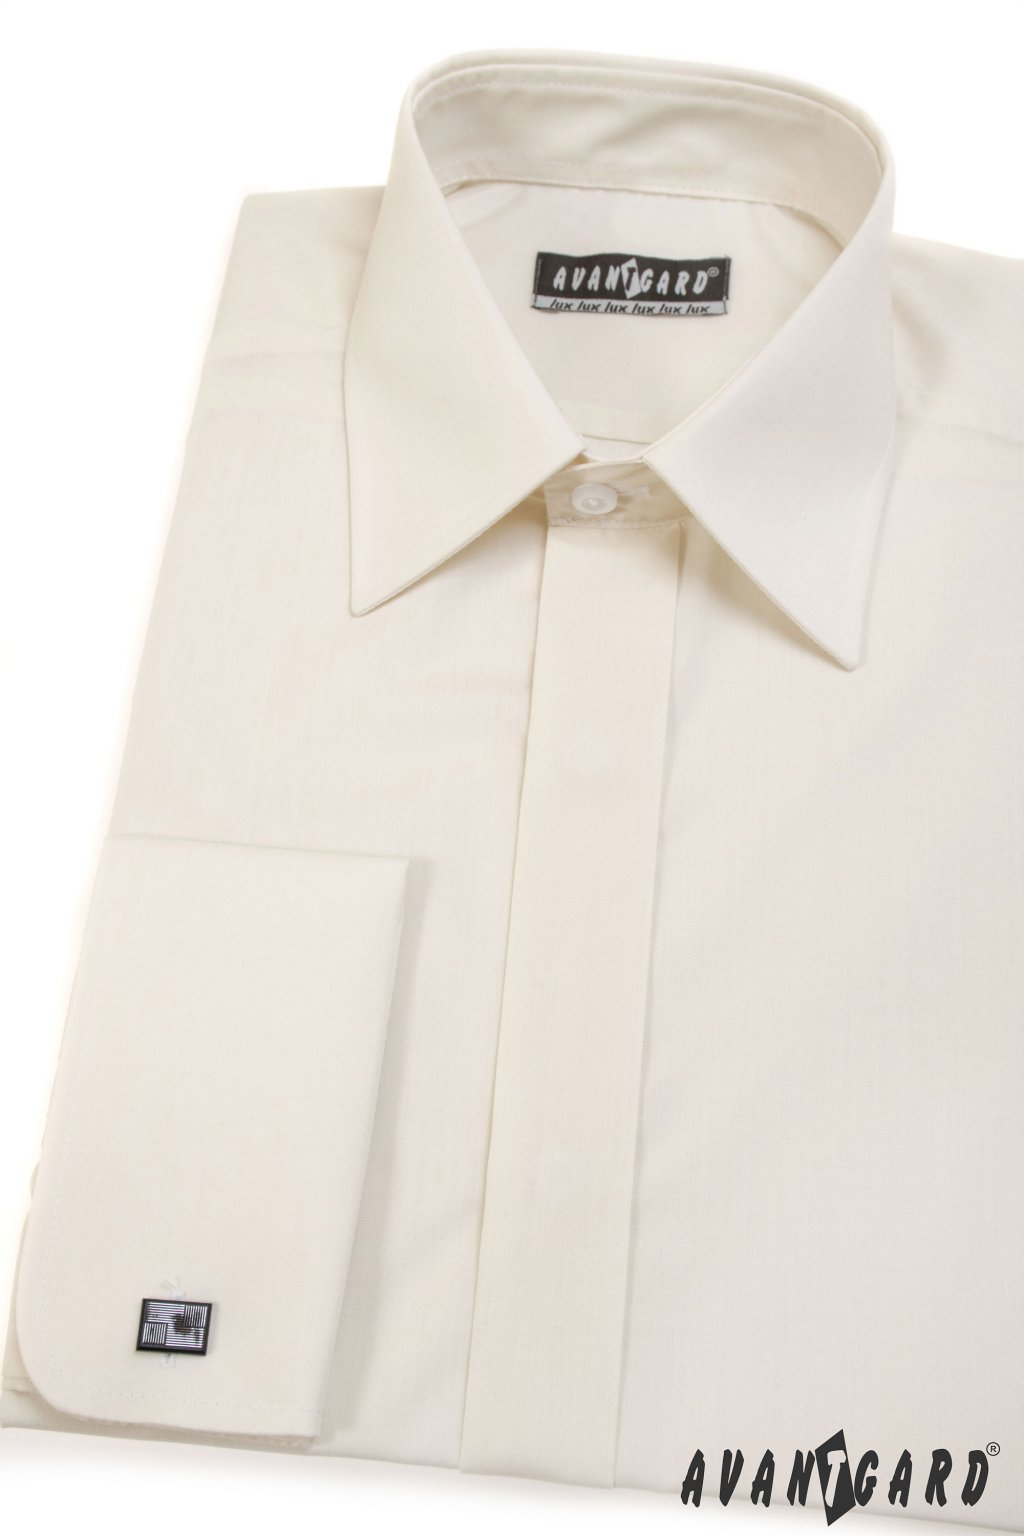 Pánská košile KLASIK s krytou légou a dvojitými manžetami na manžetové knoflíčky, 670-2, Smetanová